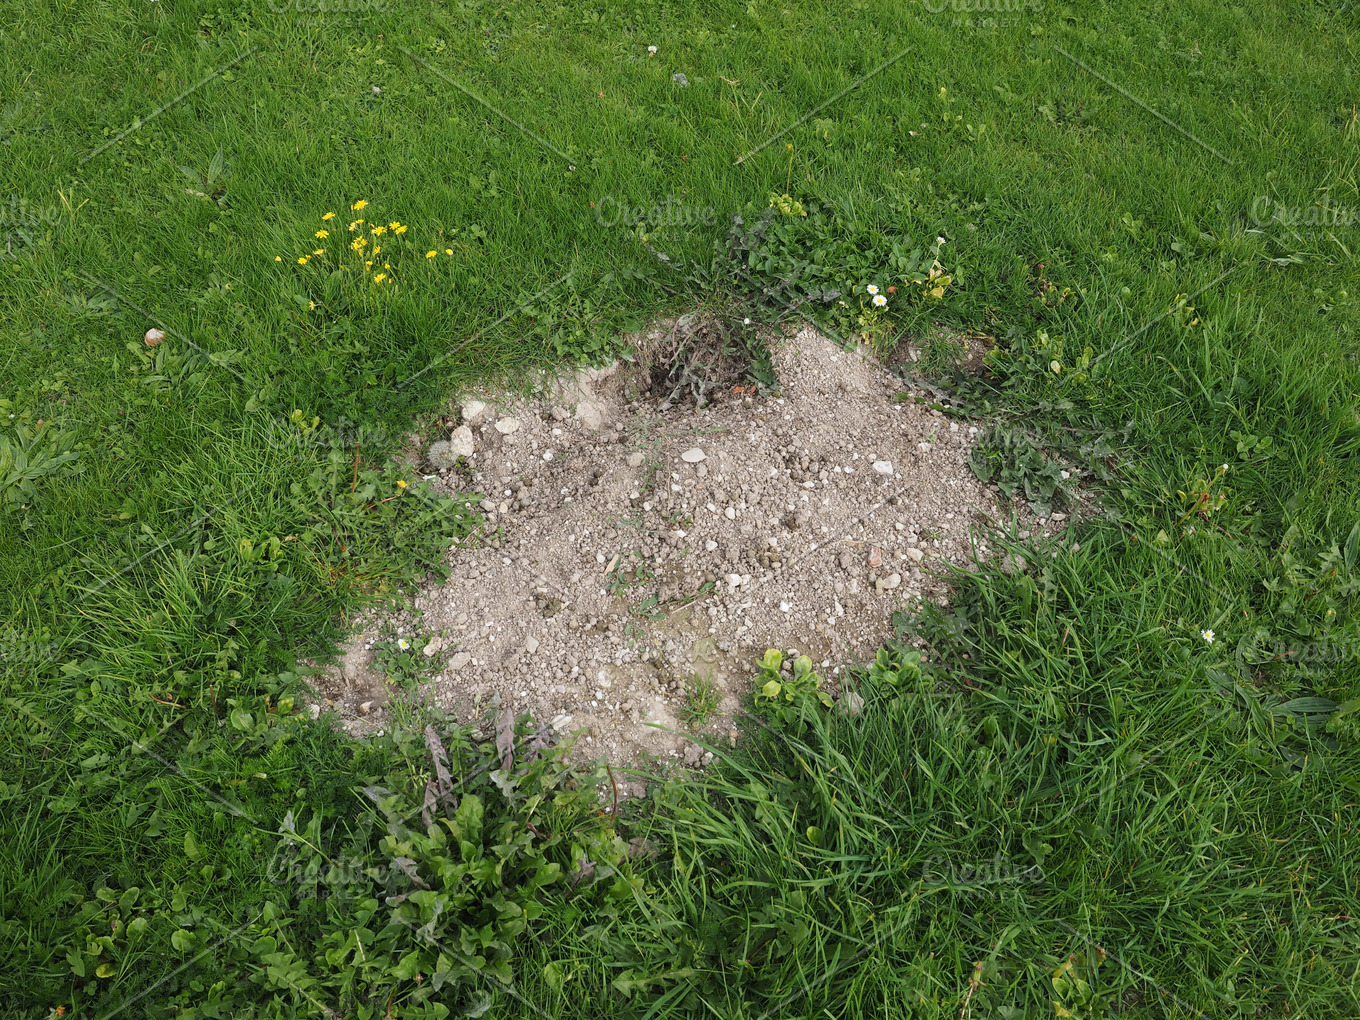 Mole Holes In A Lawn Photos Creative Market